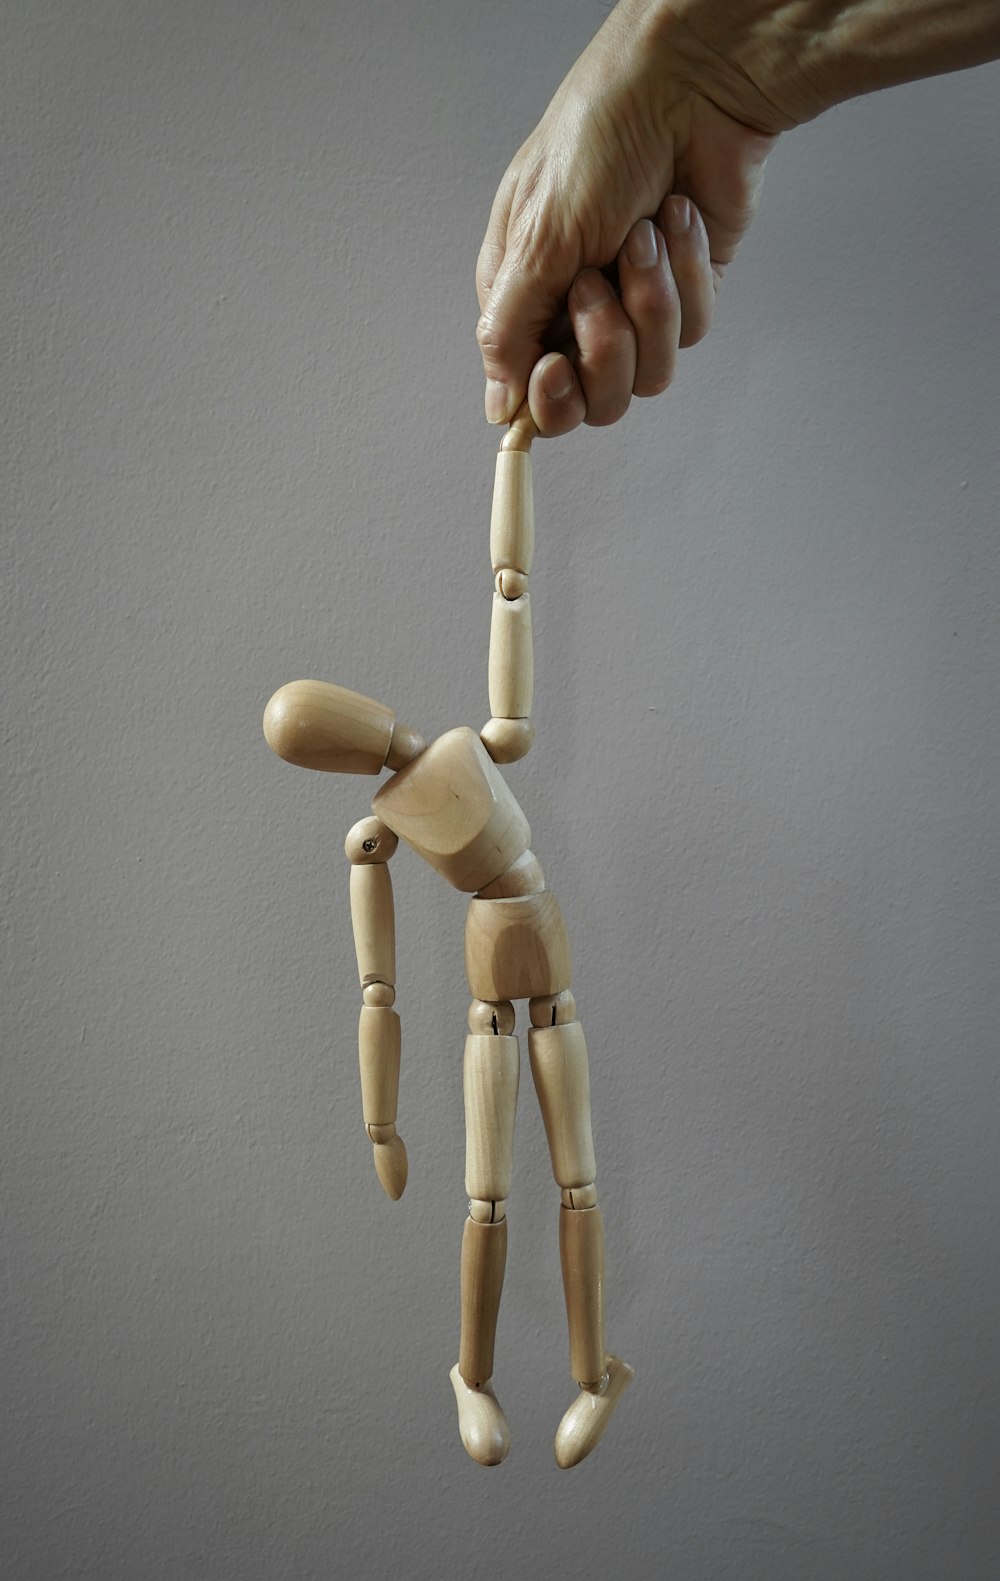 un maniquí de madera sostenido por una mano